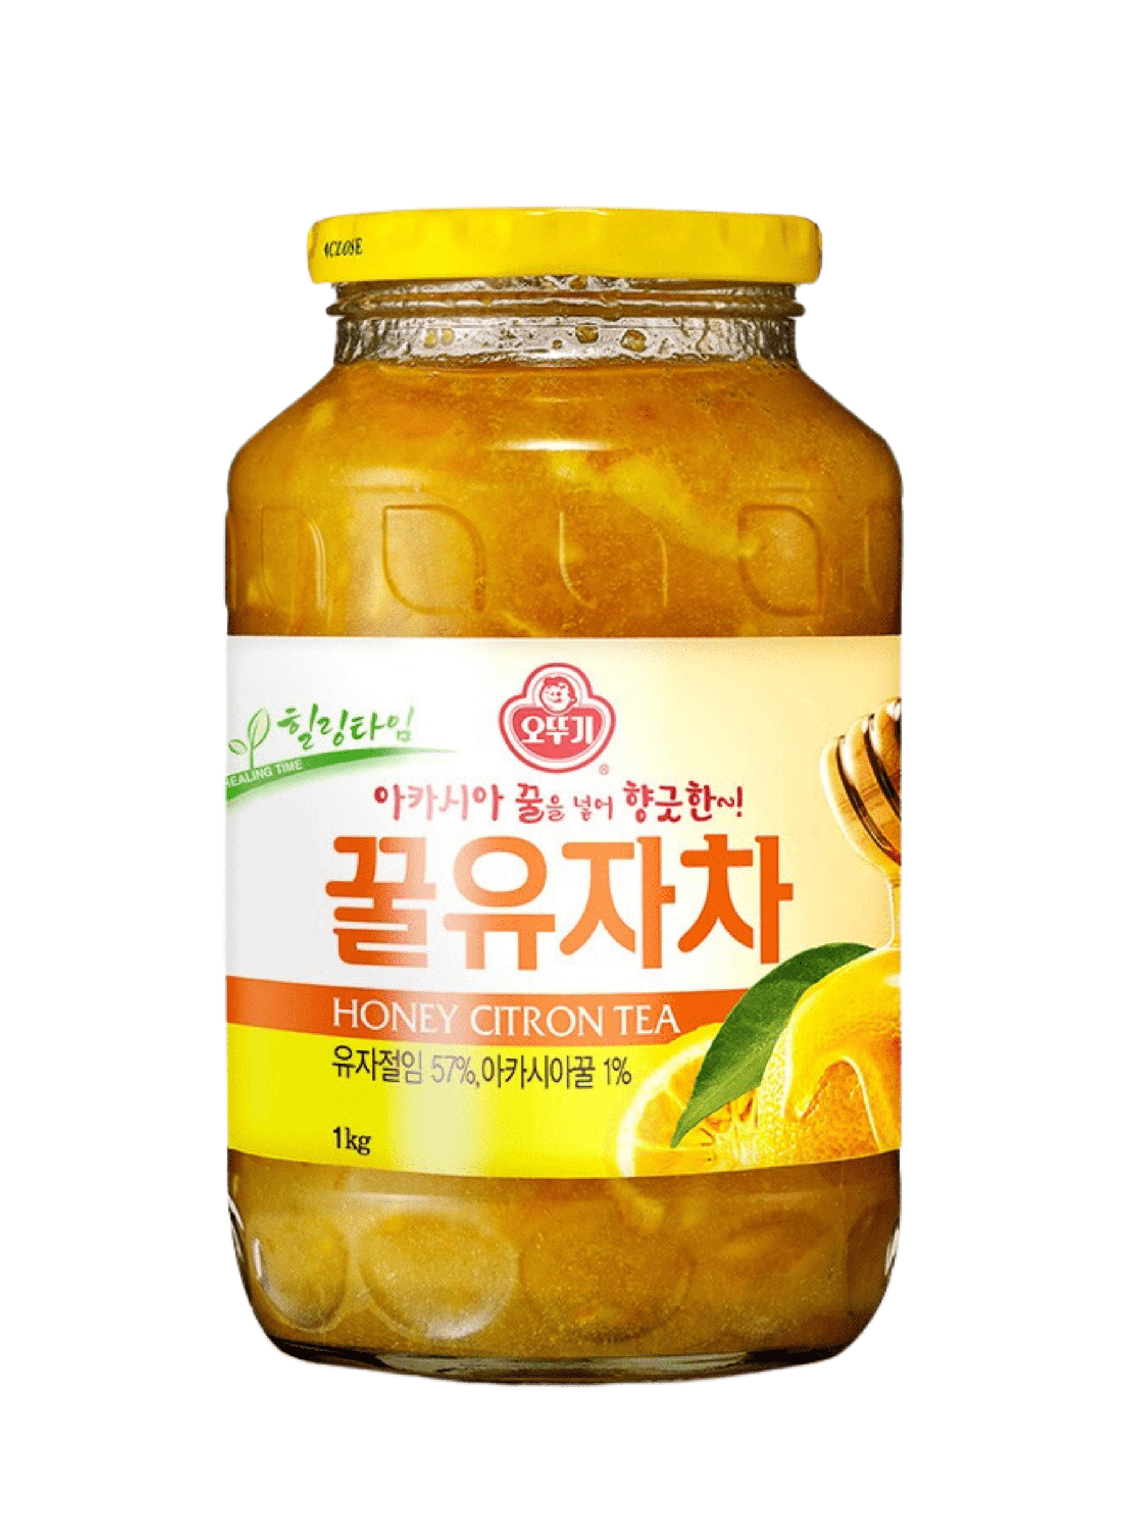 Honey Citron